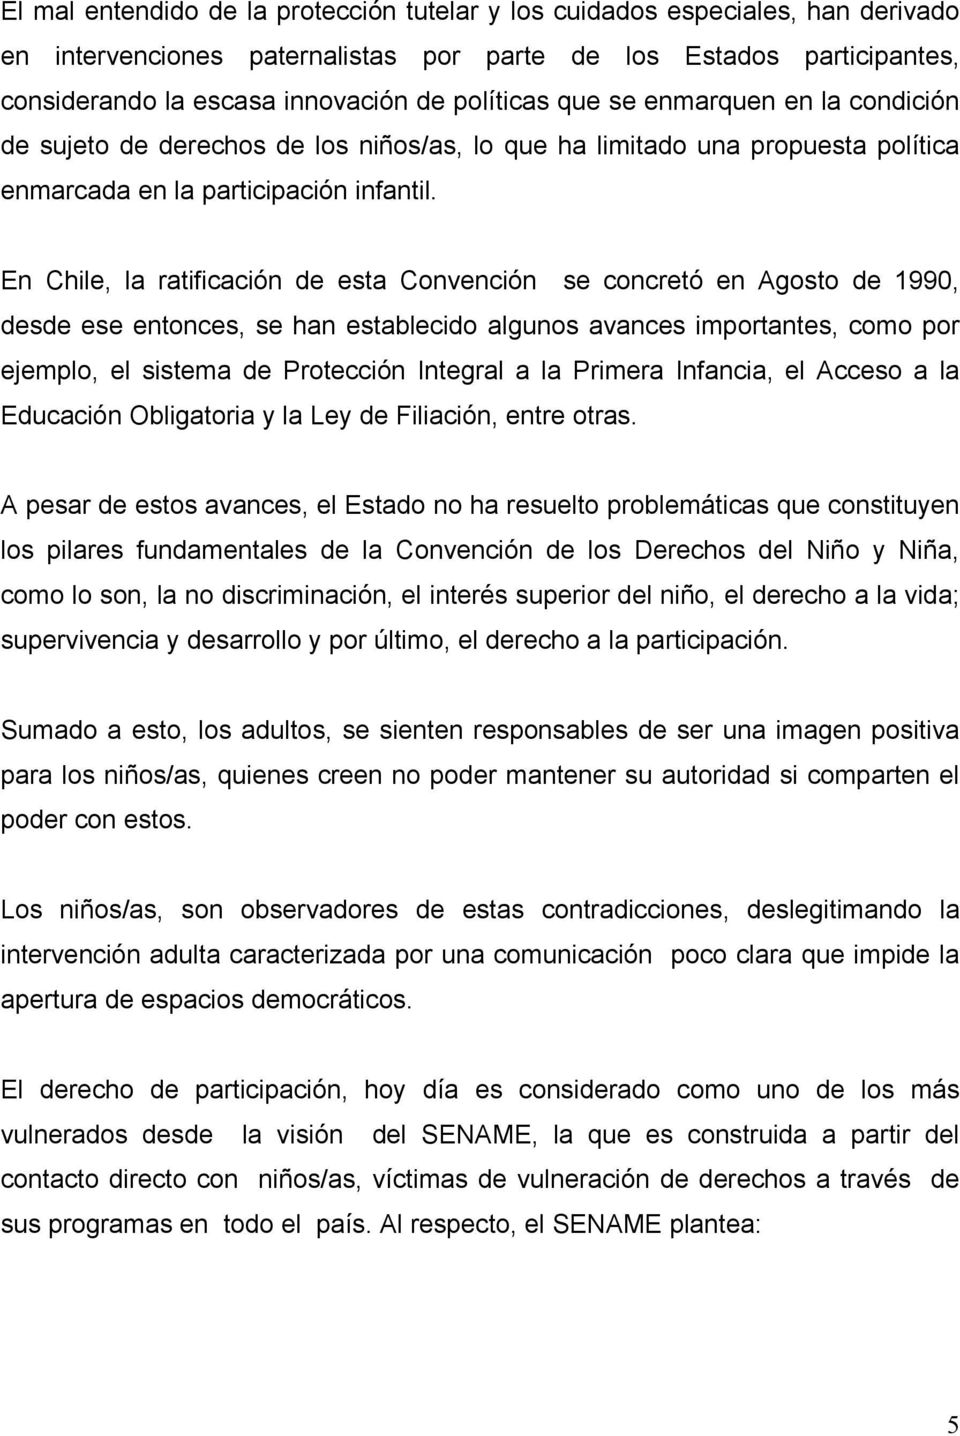 En Chile, la ratificación de esta Convención se concretó en Agosto de 1990, desde ese entonces, se han establecido algunos avances importantes, como por ejemplo, el sistema de Protección Integral a